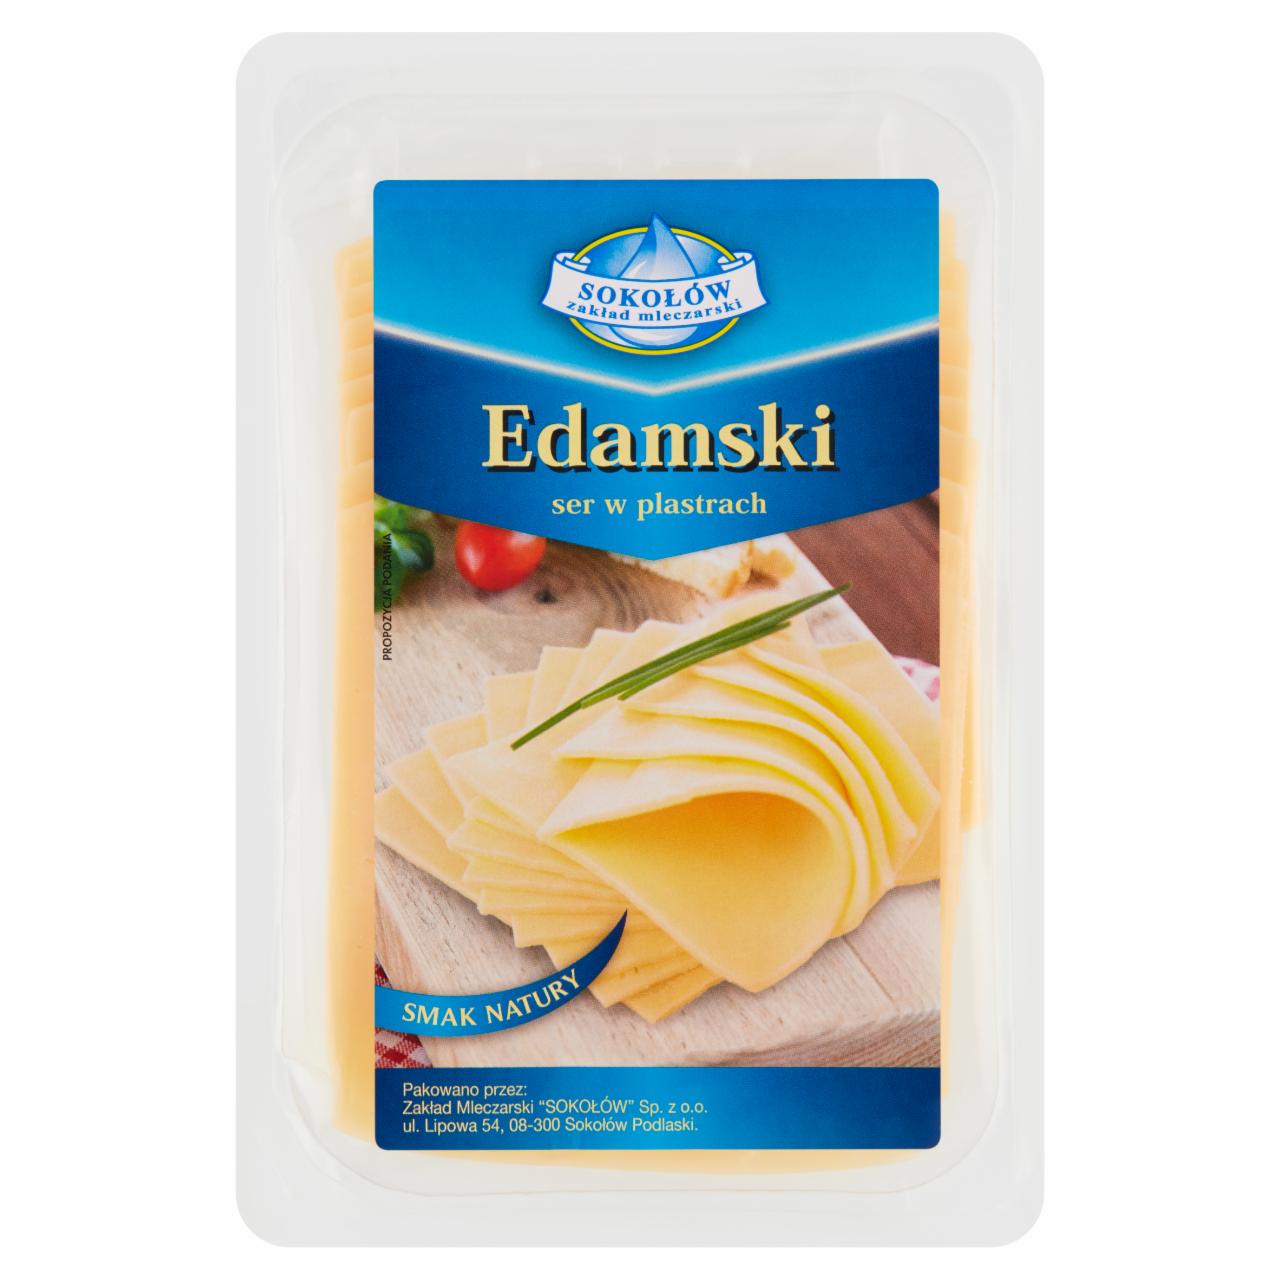 Zdjęcia - Sokołów Edamski ser w plastrach 150 g